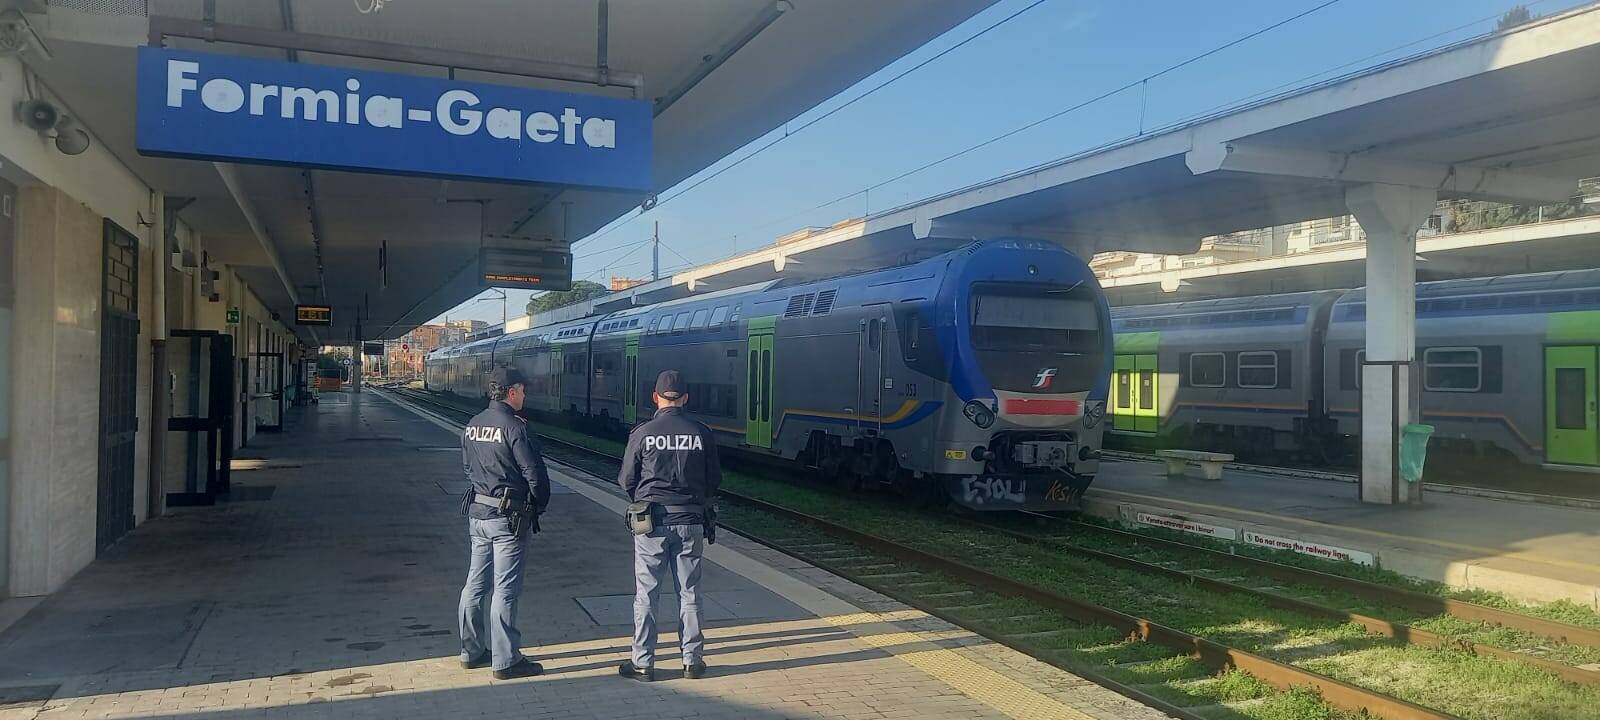 polizia ferroviaria formia-gaeta